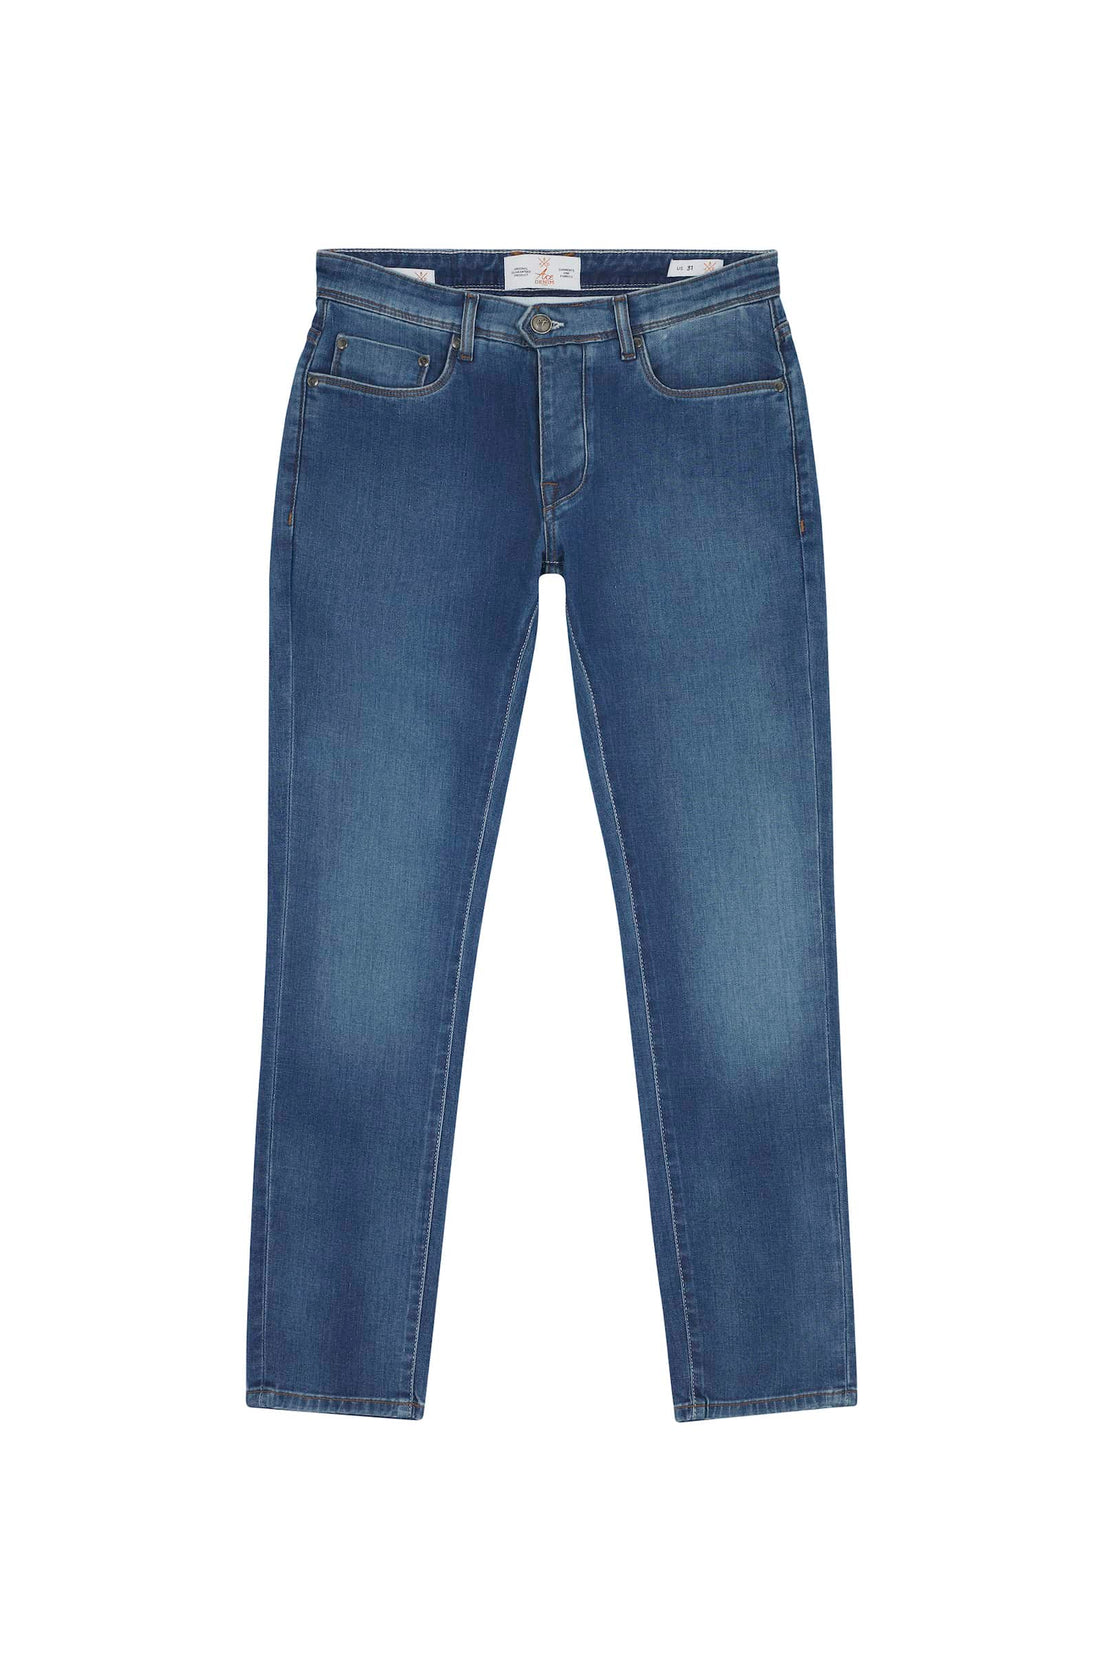 jeans homme coupe slim bleu denim tissu selvedge japonais 